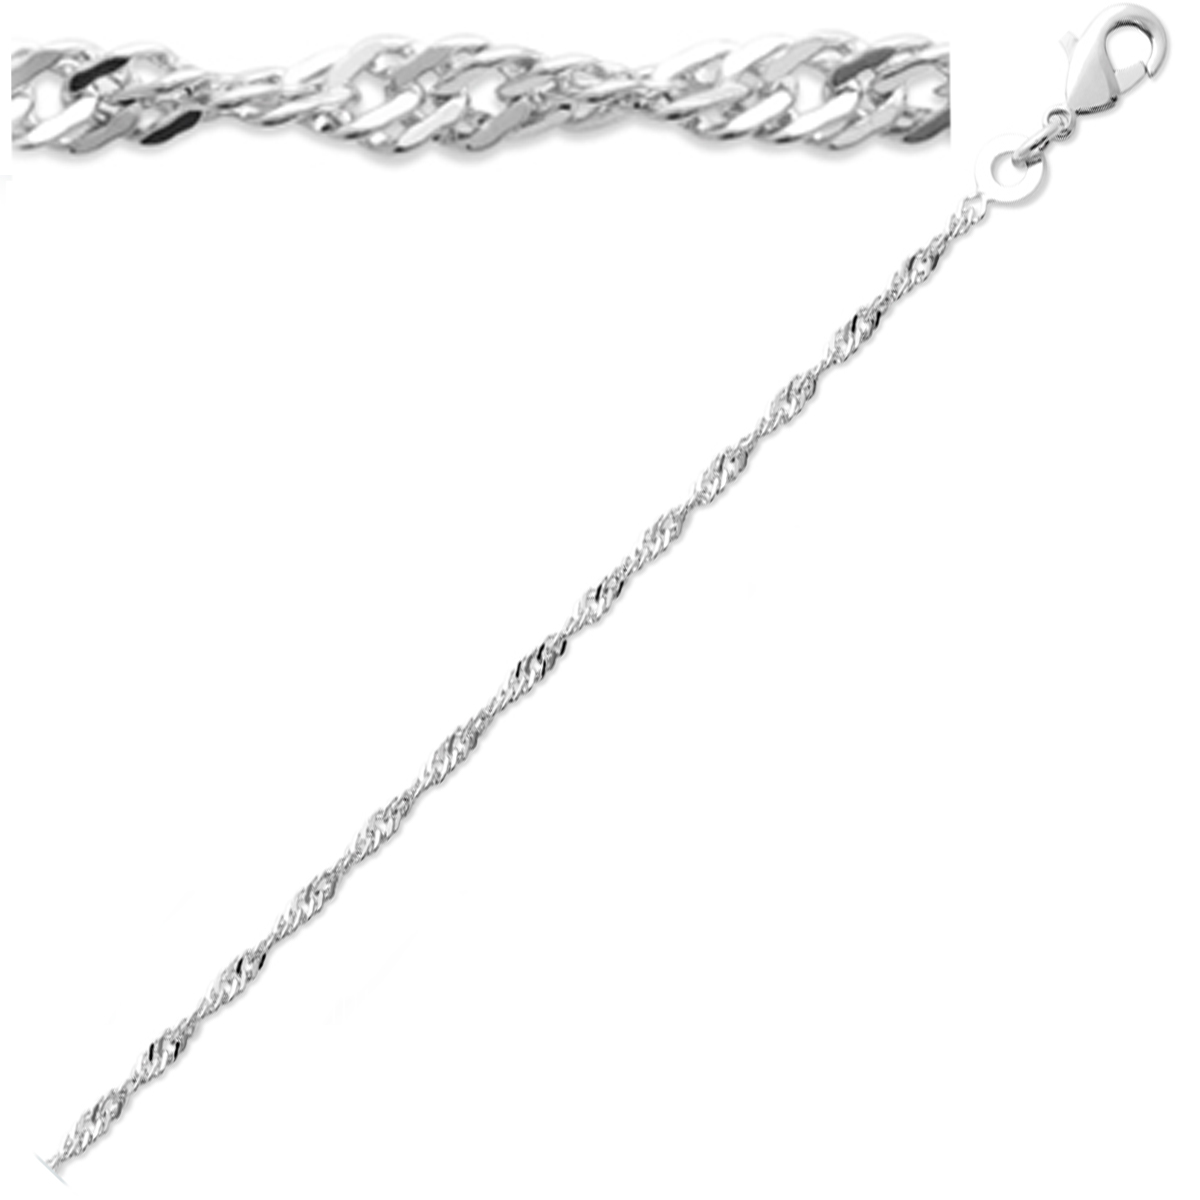 Bracelet Argent \'Singapour\' argenté (rhodié) - 18 cm 2 mm - [Q8436]